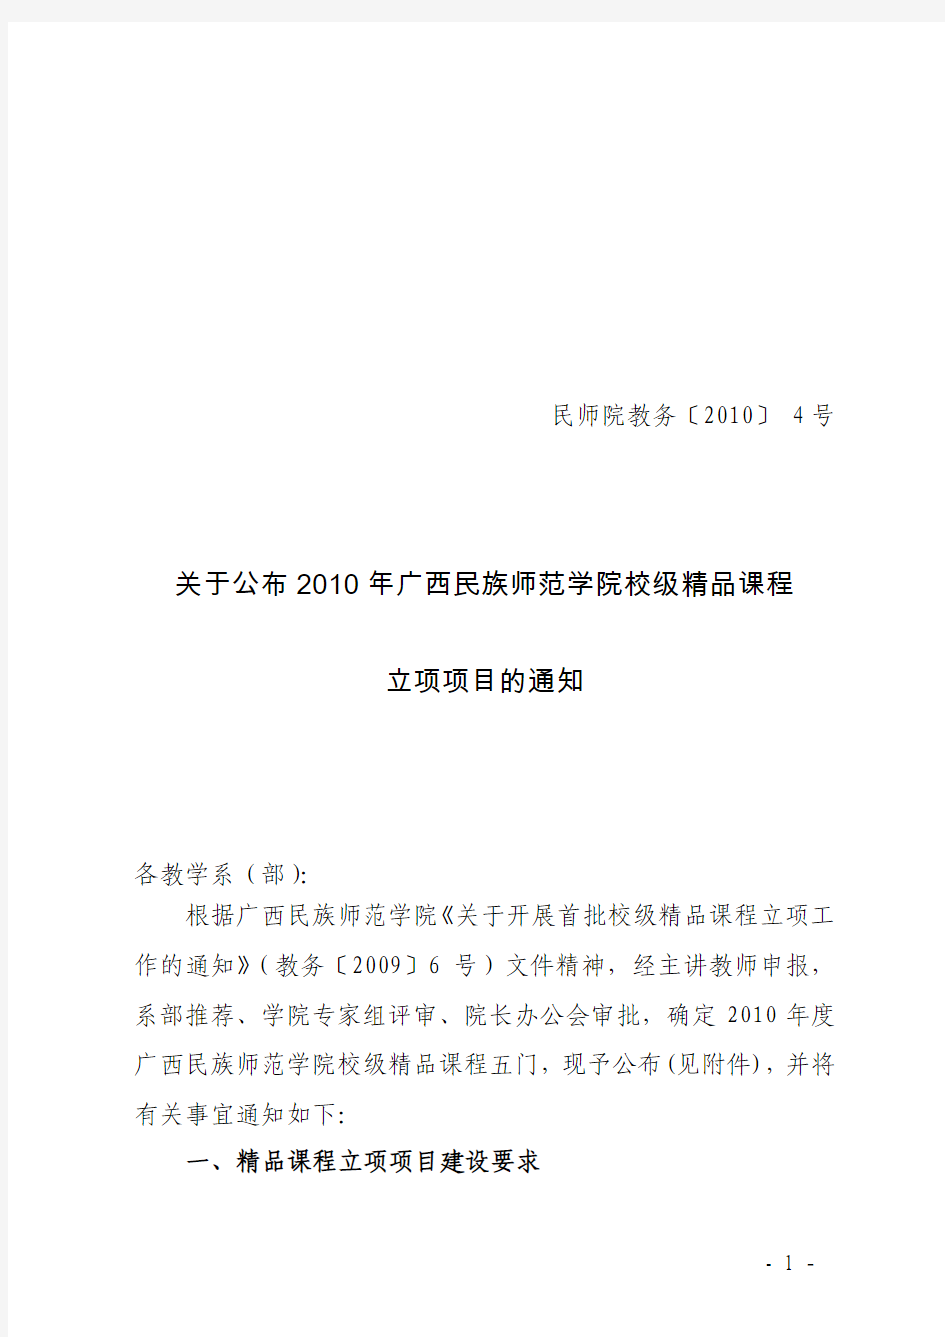 民师院教务〔2010〕4号关于公布2010年广西民族师范学院校级精品课程立项项目的通知